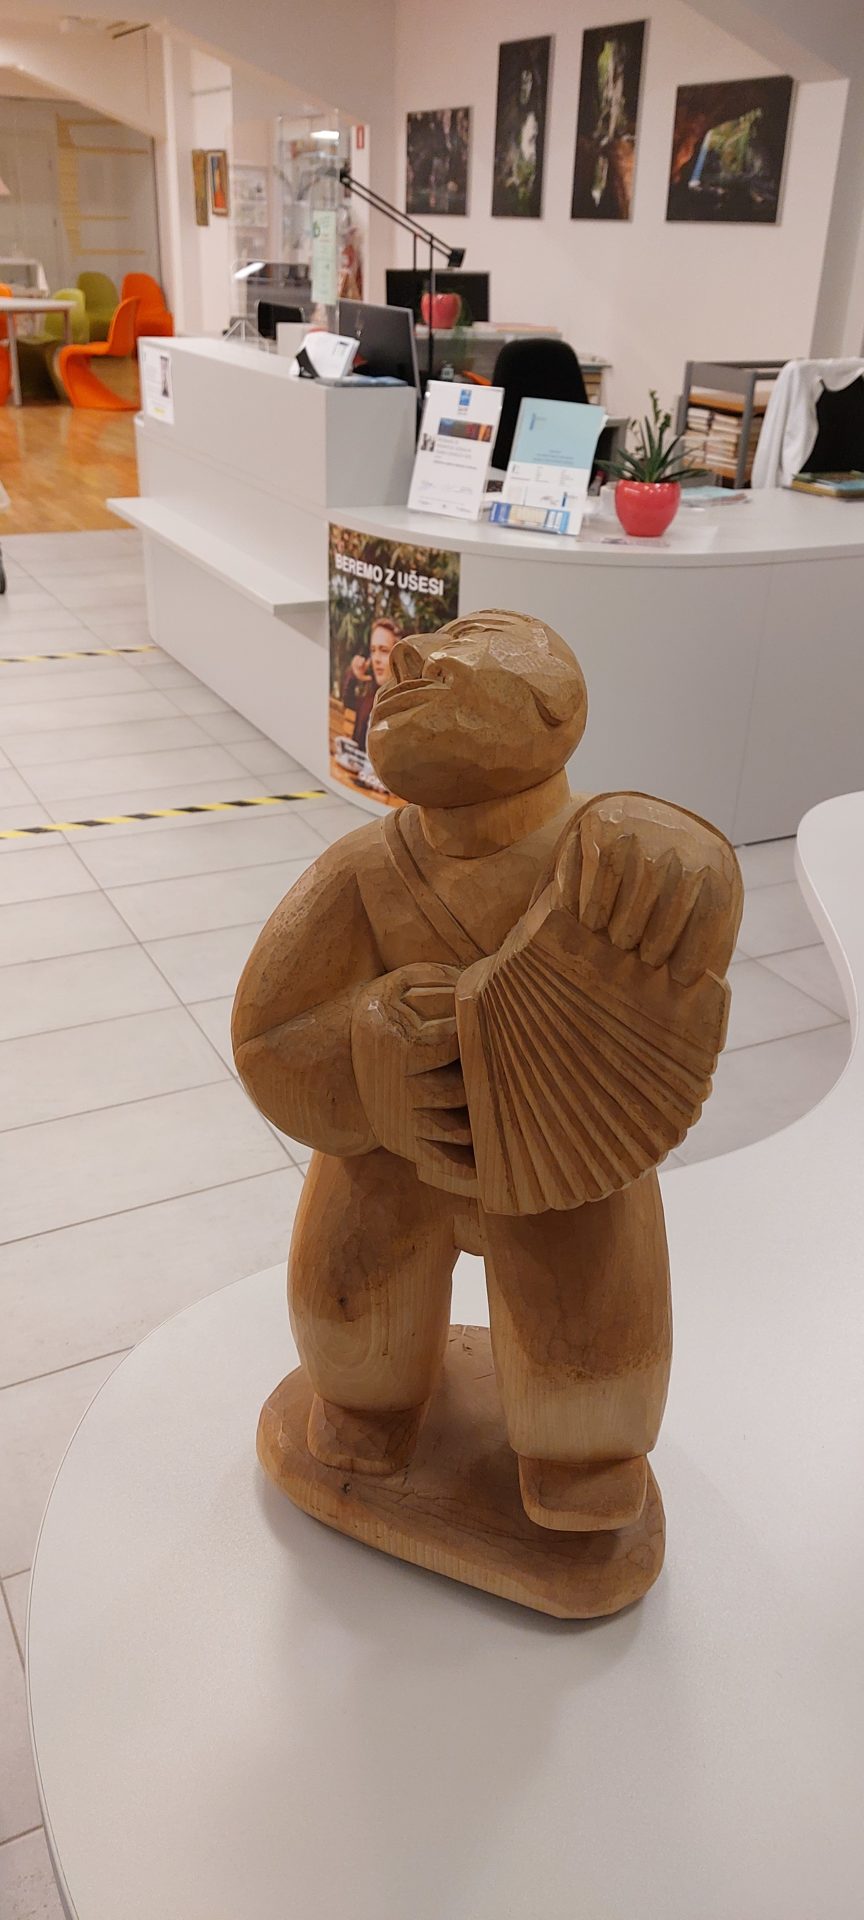 20220916 190235 - Edvin Puntar - razstava lesenih kiparskih del